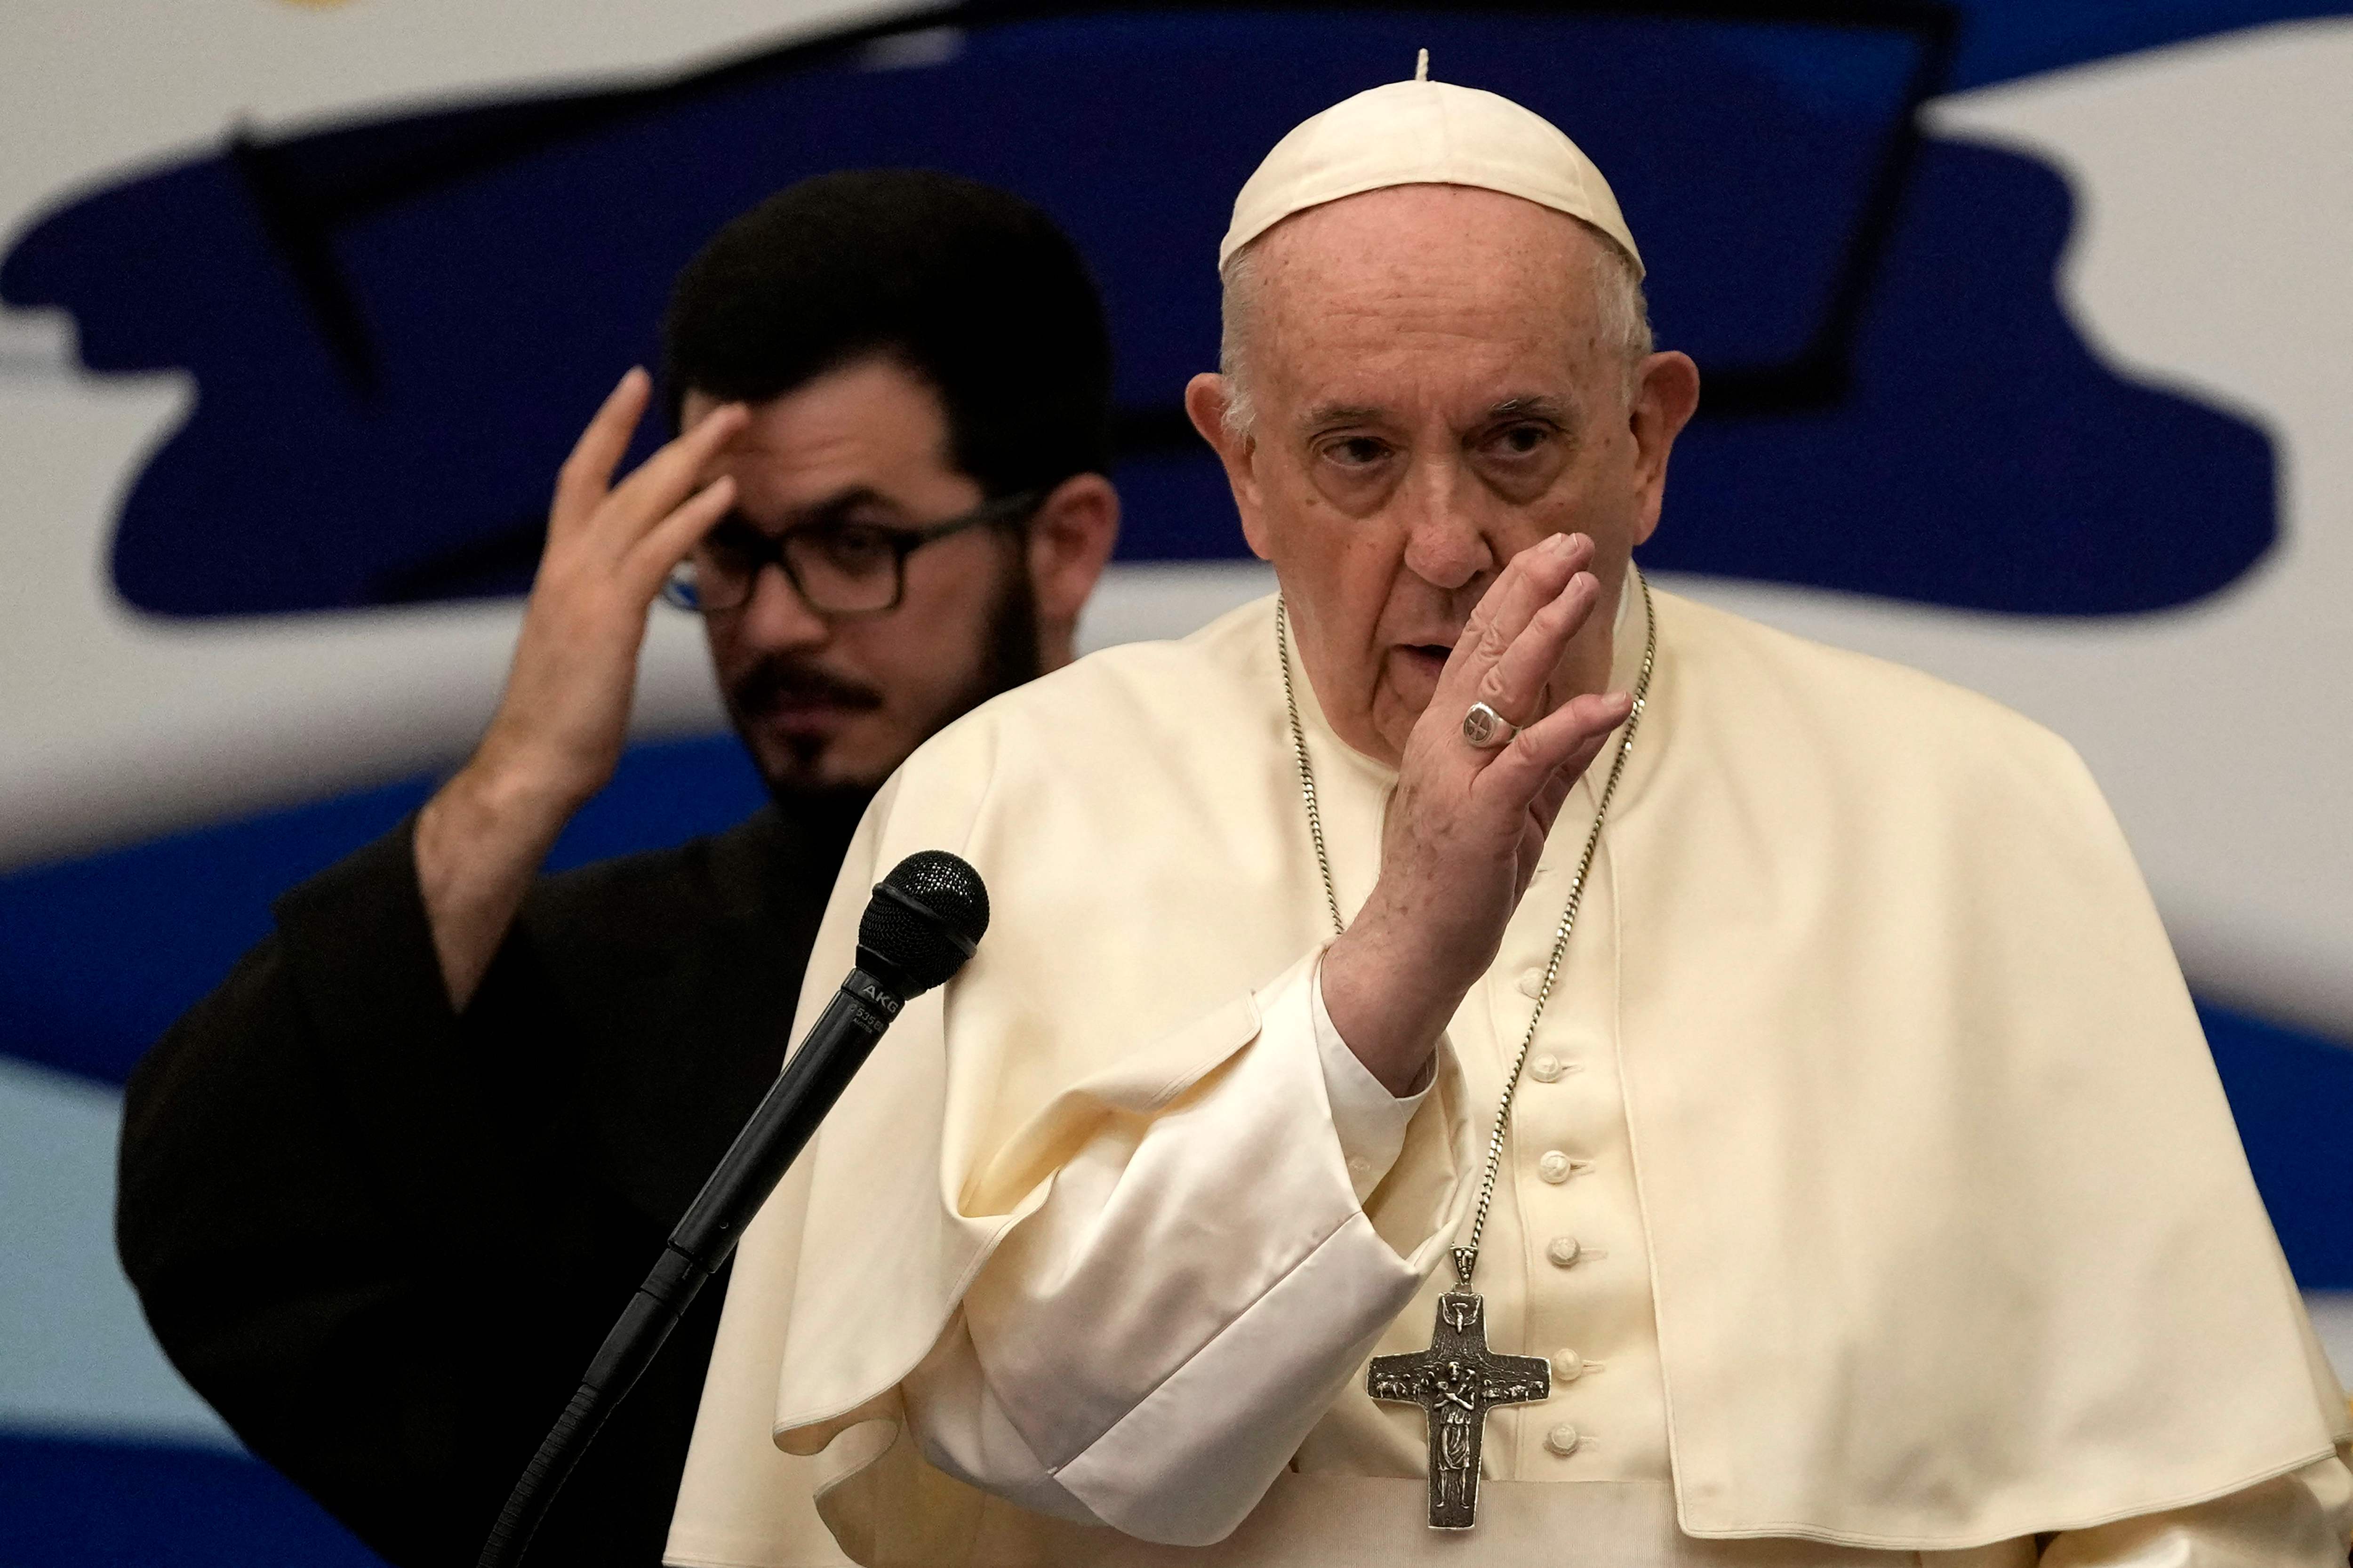 El papa Francisco se mostró "vivamente apenado" al conocer la "dolorosa noticia" del accidente de tráfico de un camión en el que perdieron la vida migrantes en el estado mexicano de Chiapas. (Foto Prensa Libre: AFP)